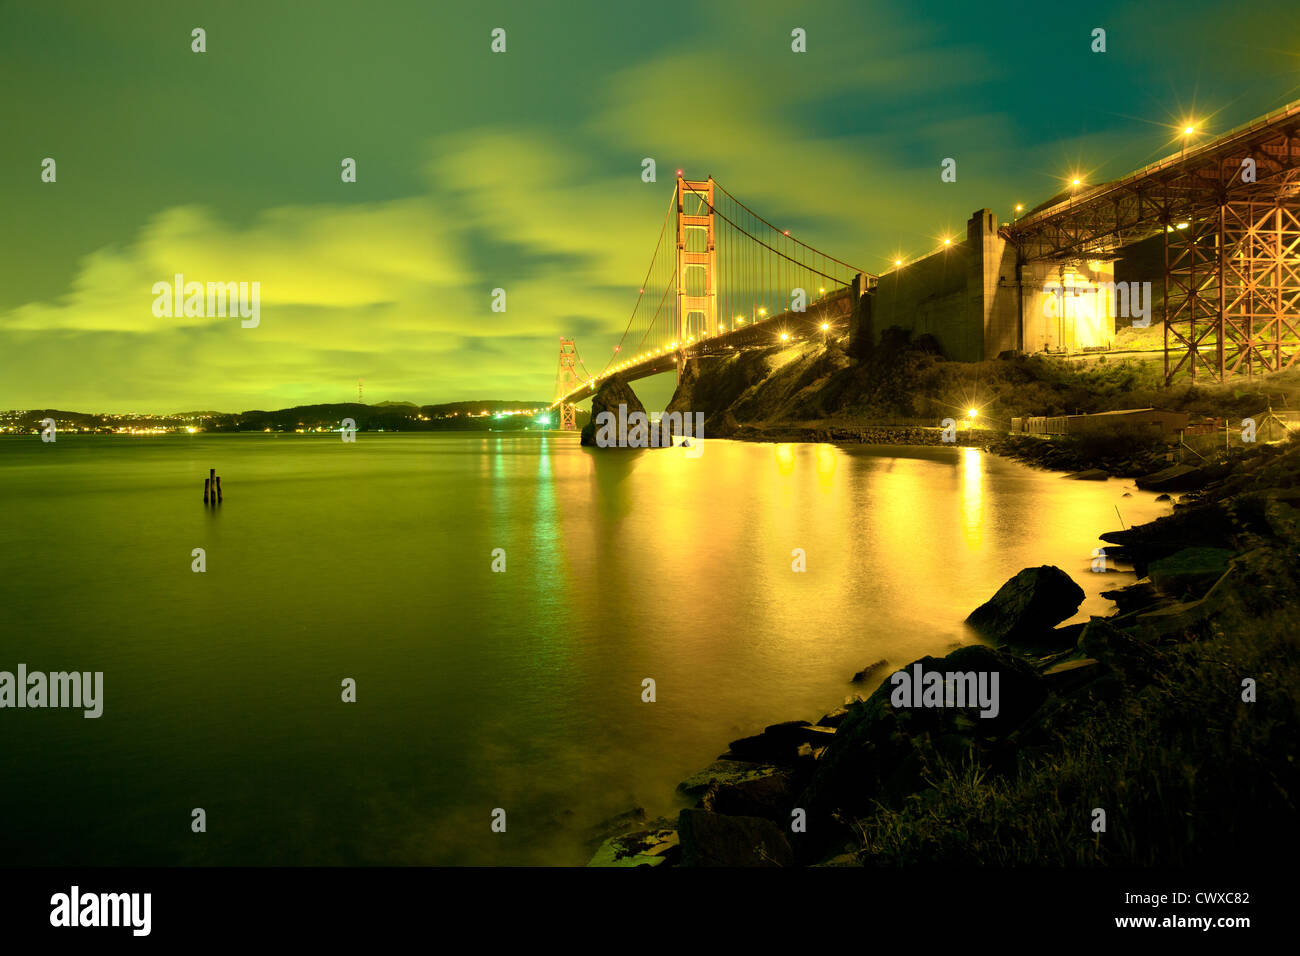 The Golden Gate Bridge, San Francisco, California, USA Stock Photo